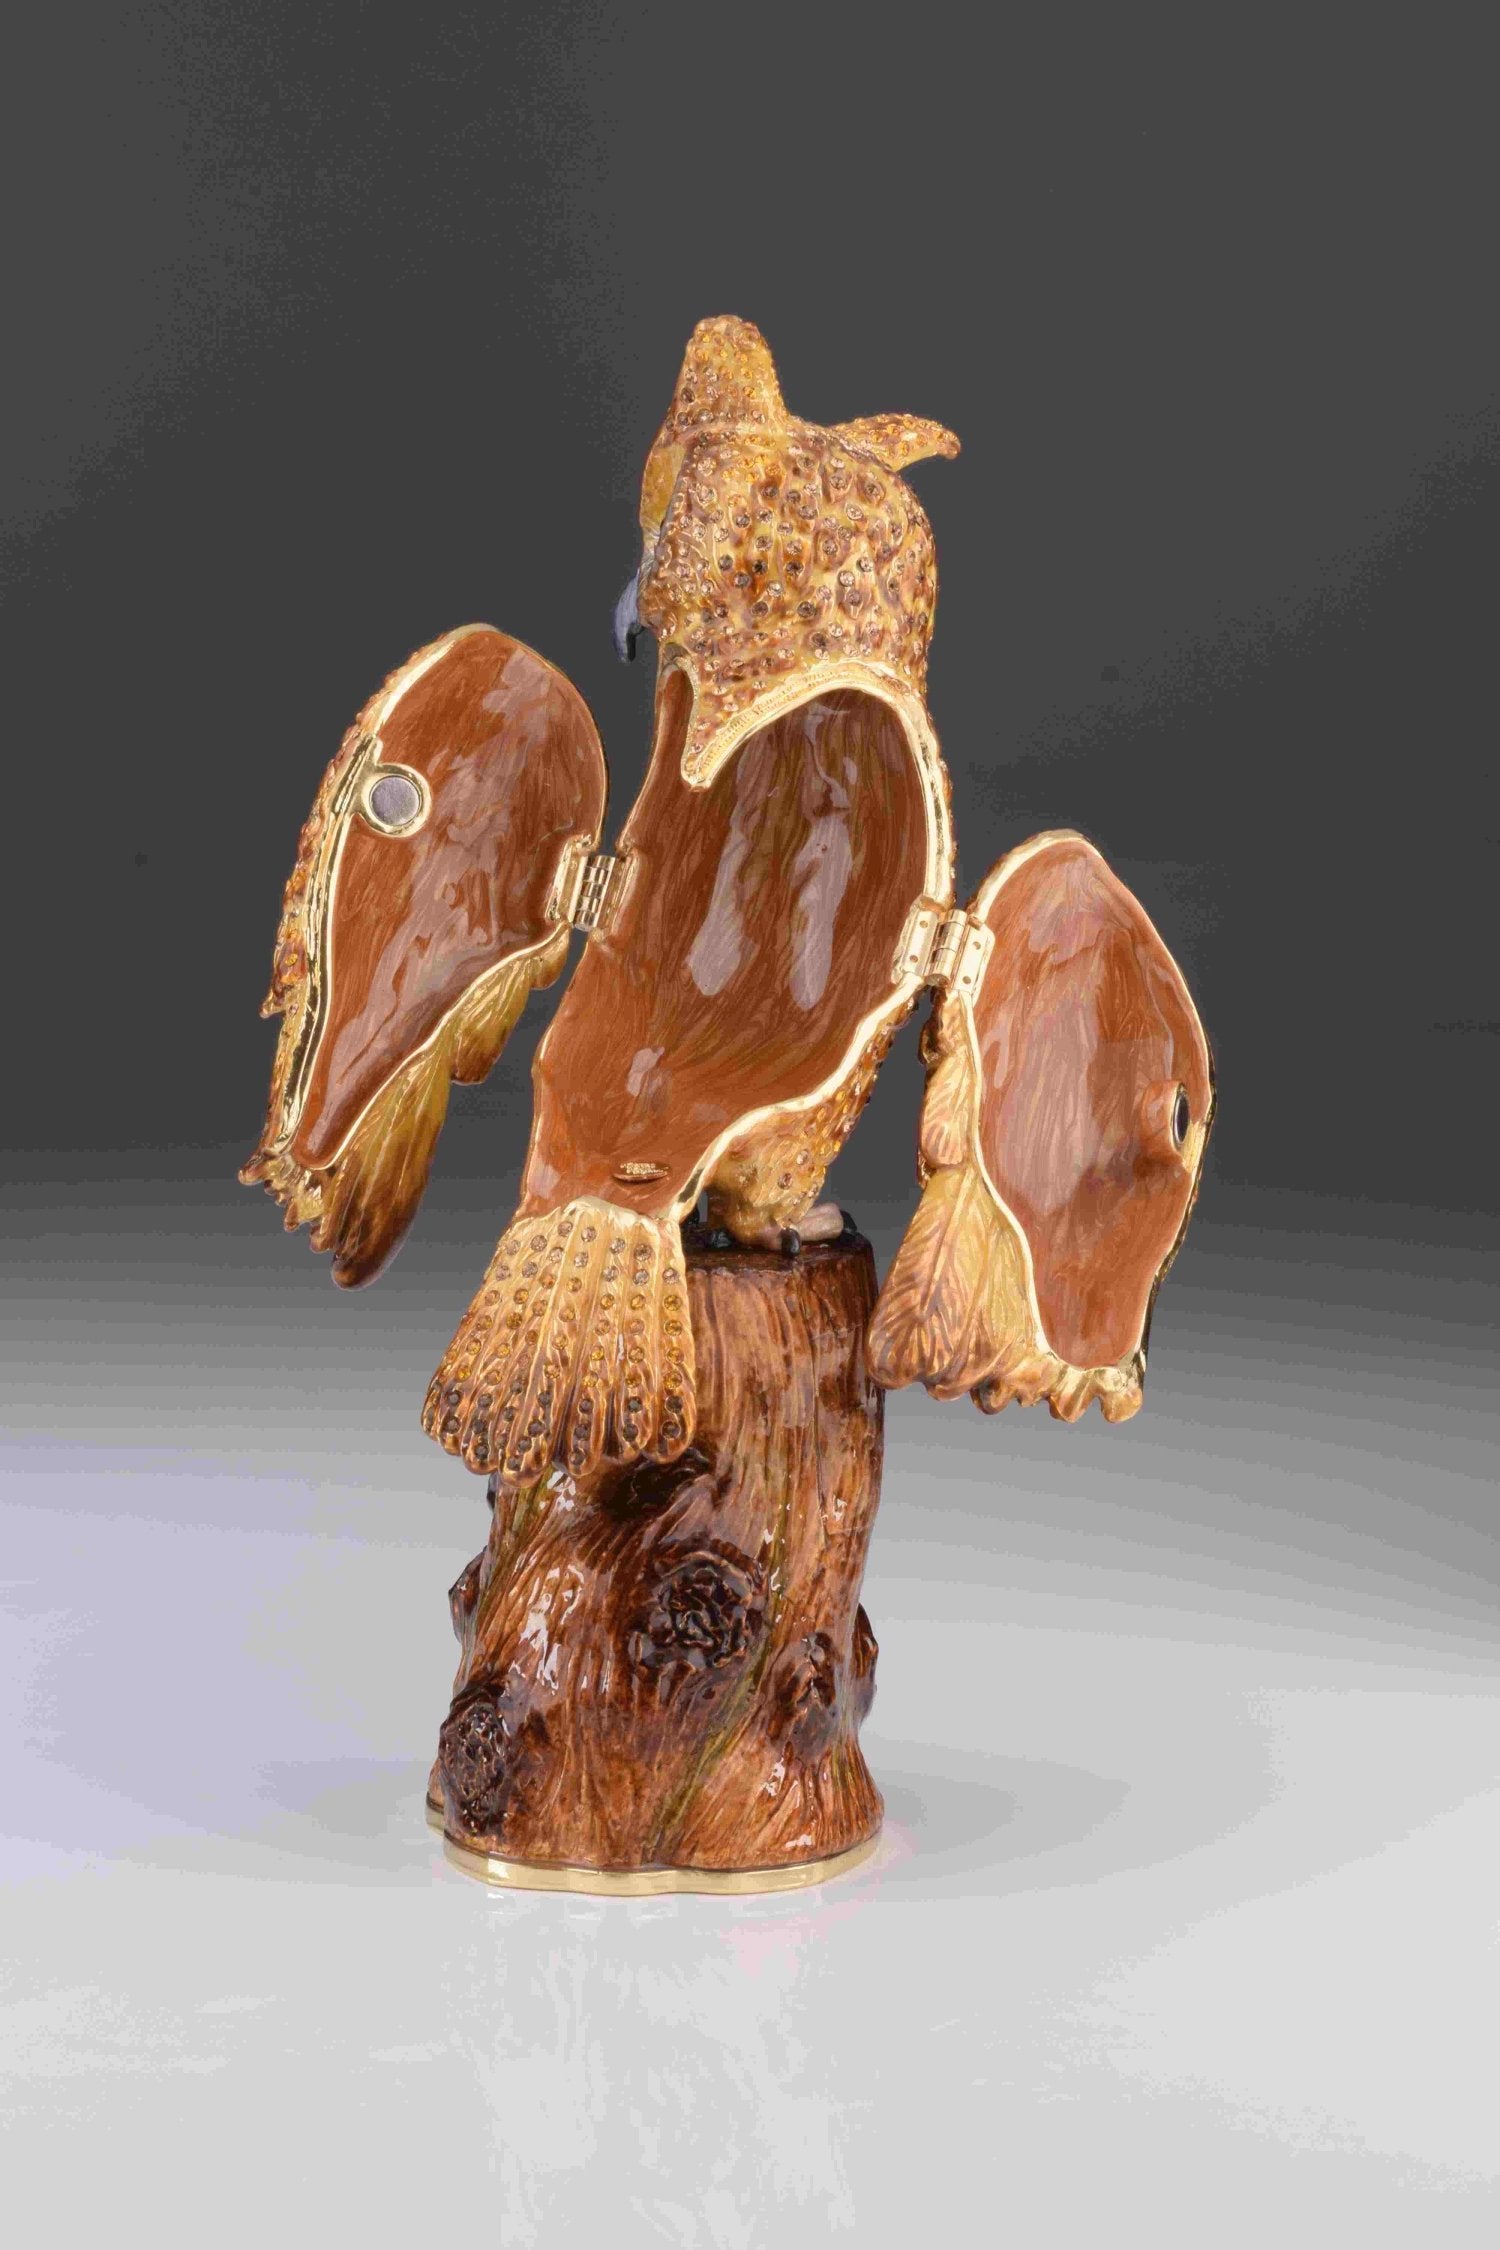 Keren Kopal Large Brown Owl trinket box 364.00